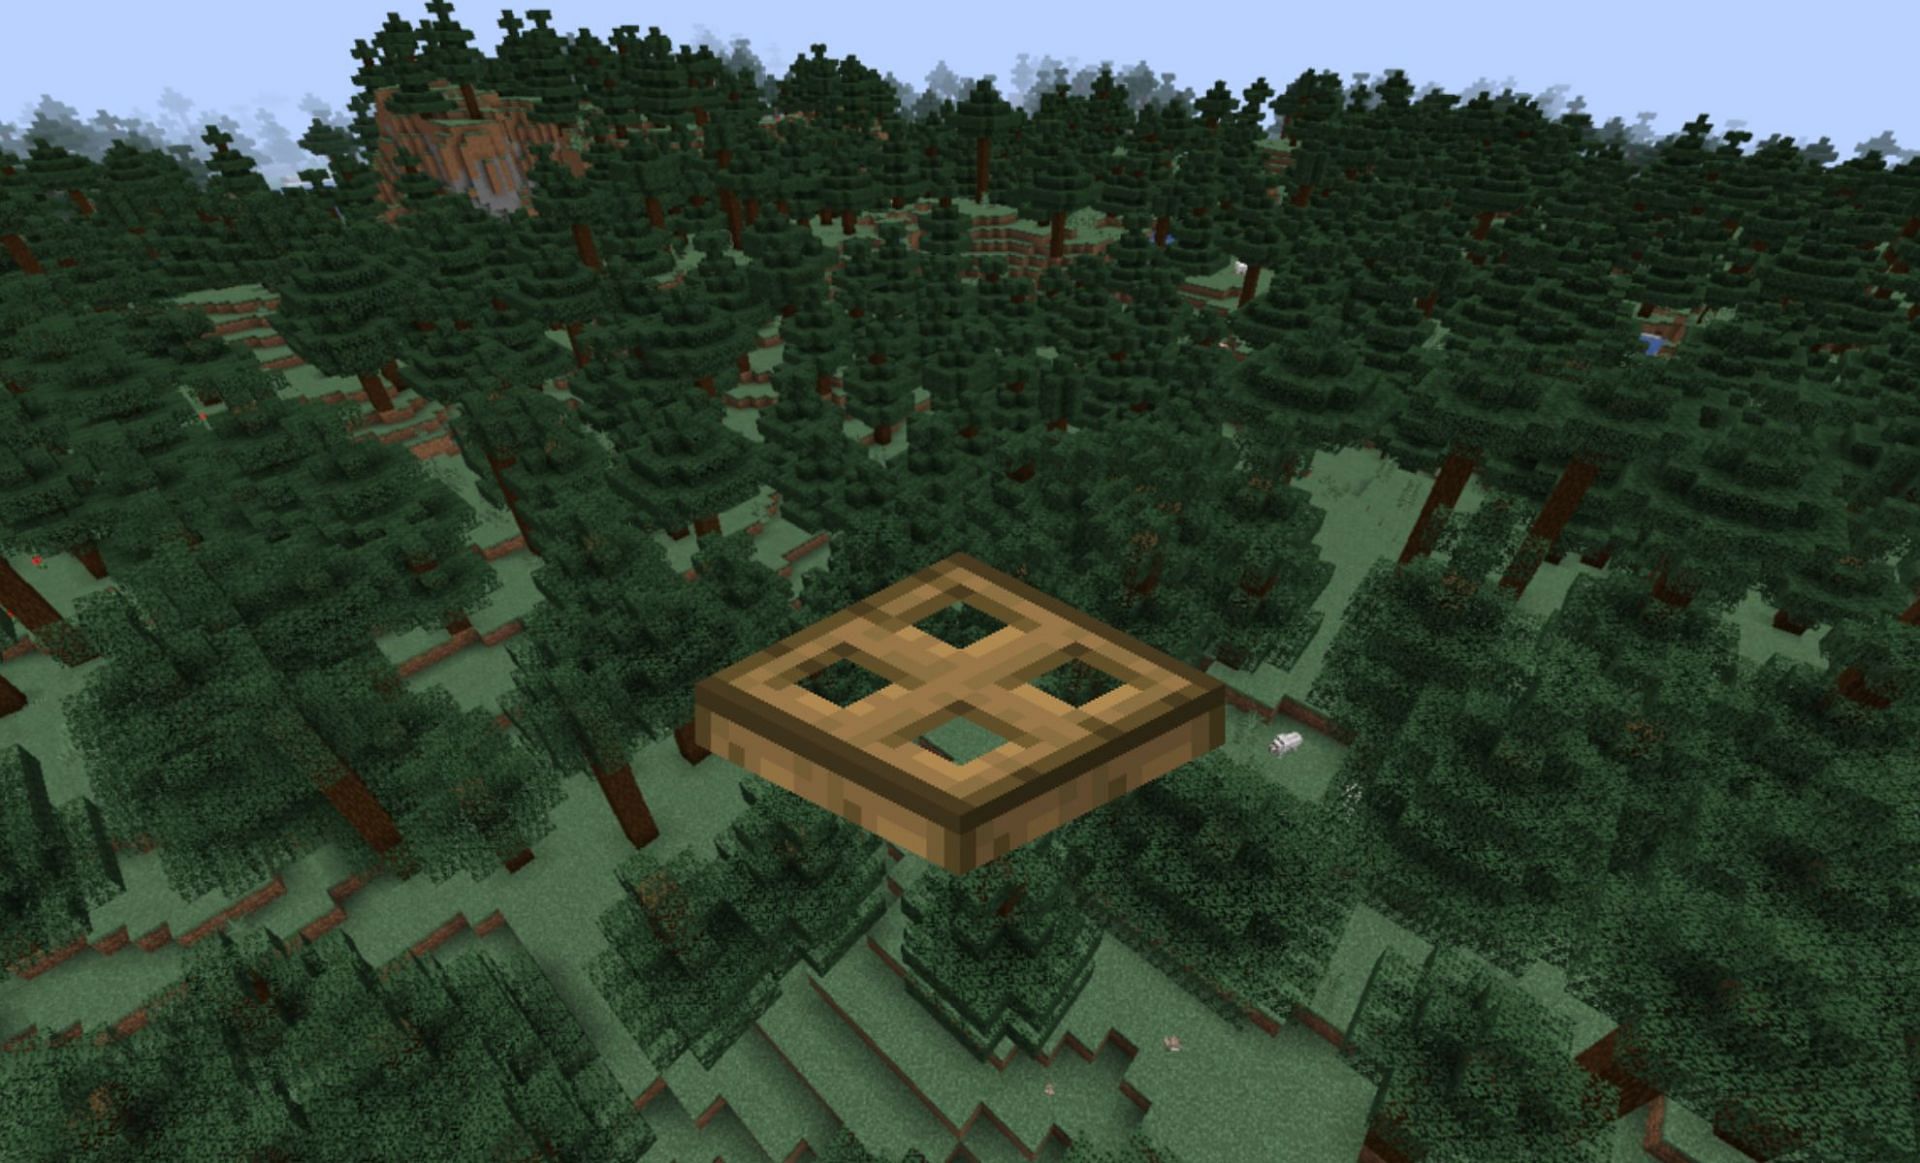 Trapdoor (Image via Minecraft Wiki